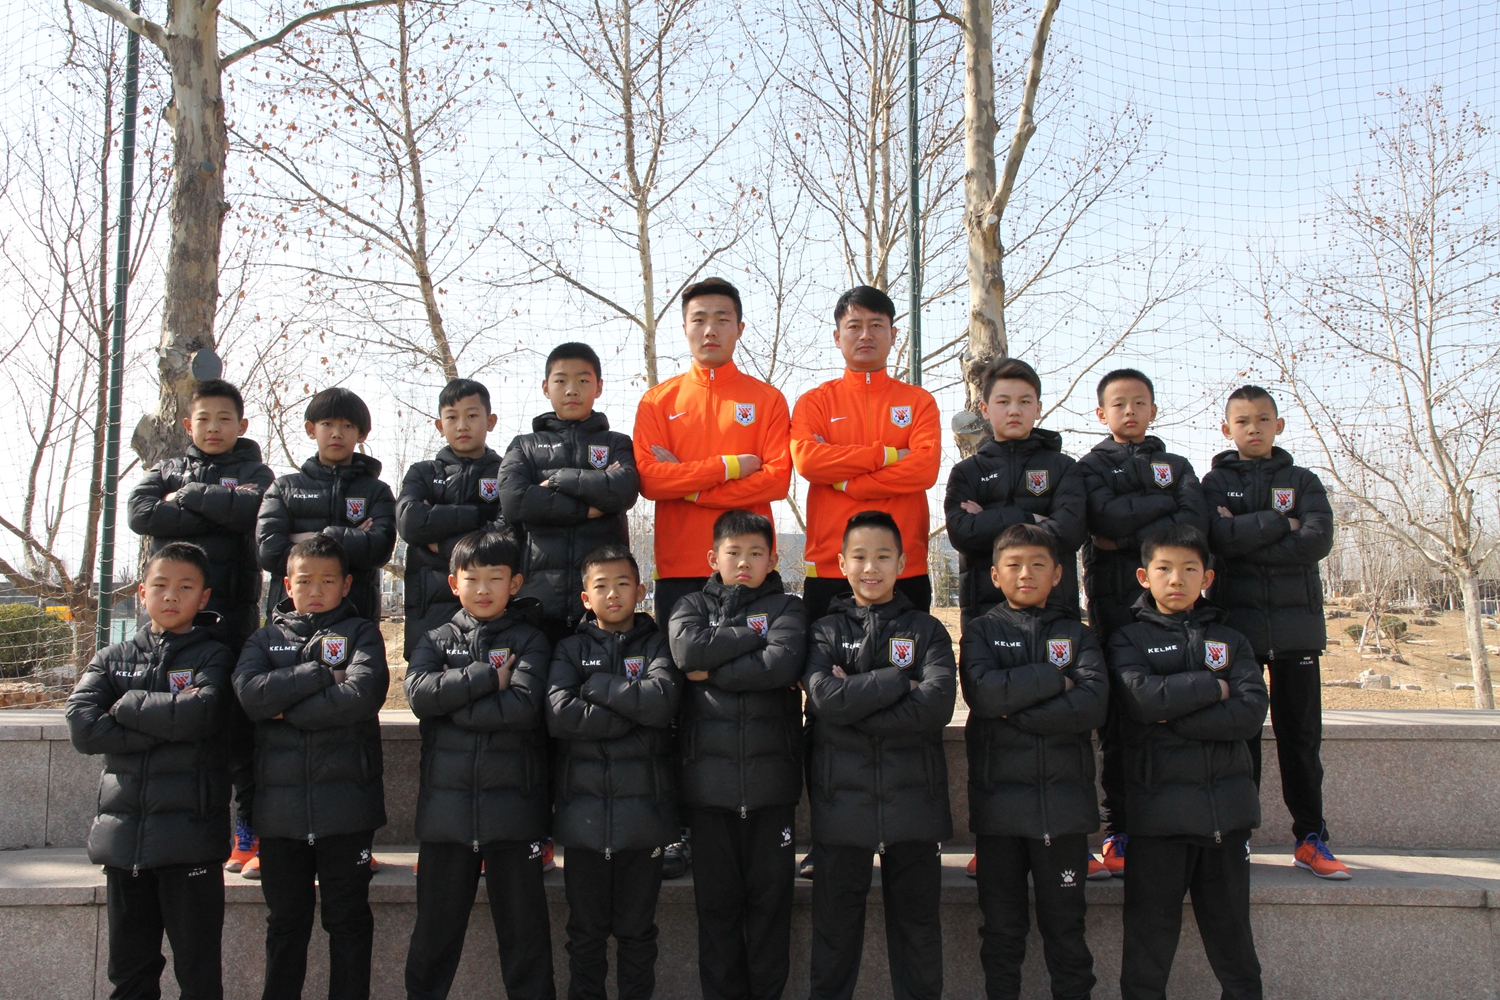 球队名称:山东鲁能泰山足球学校U19队(1999)